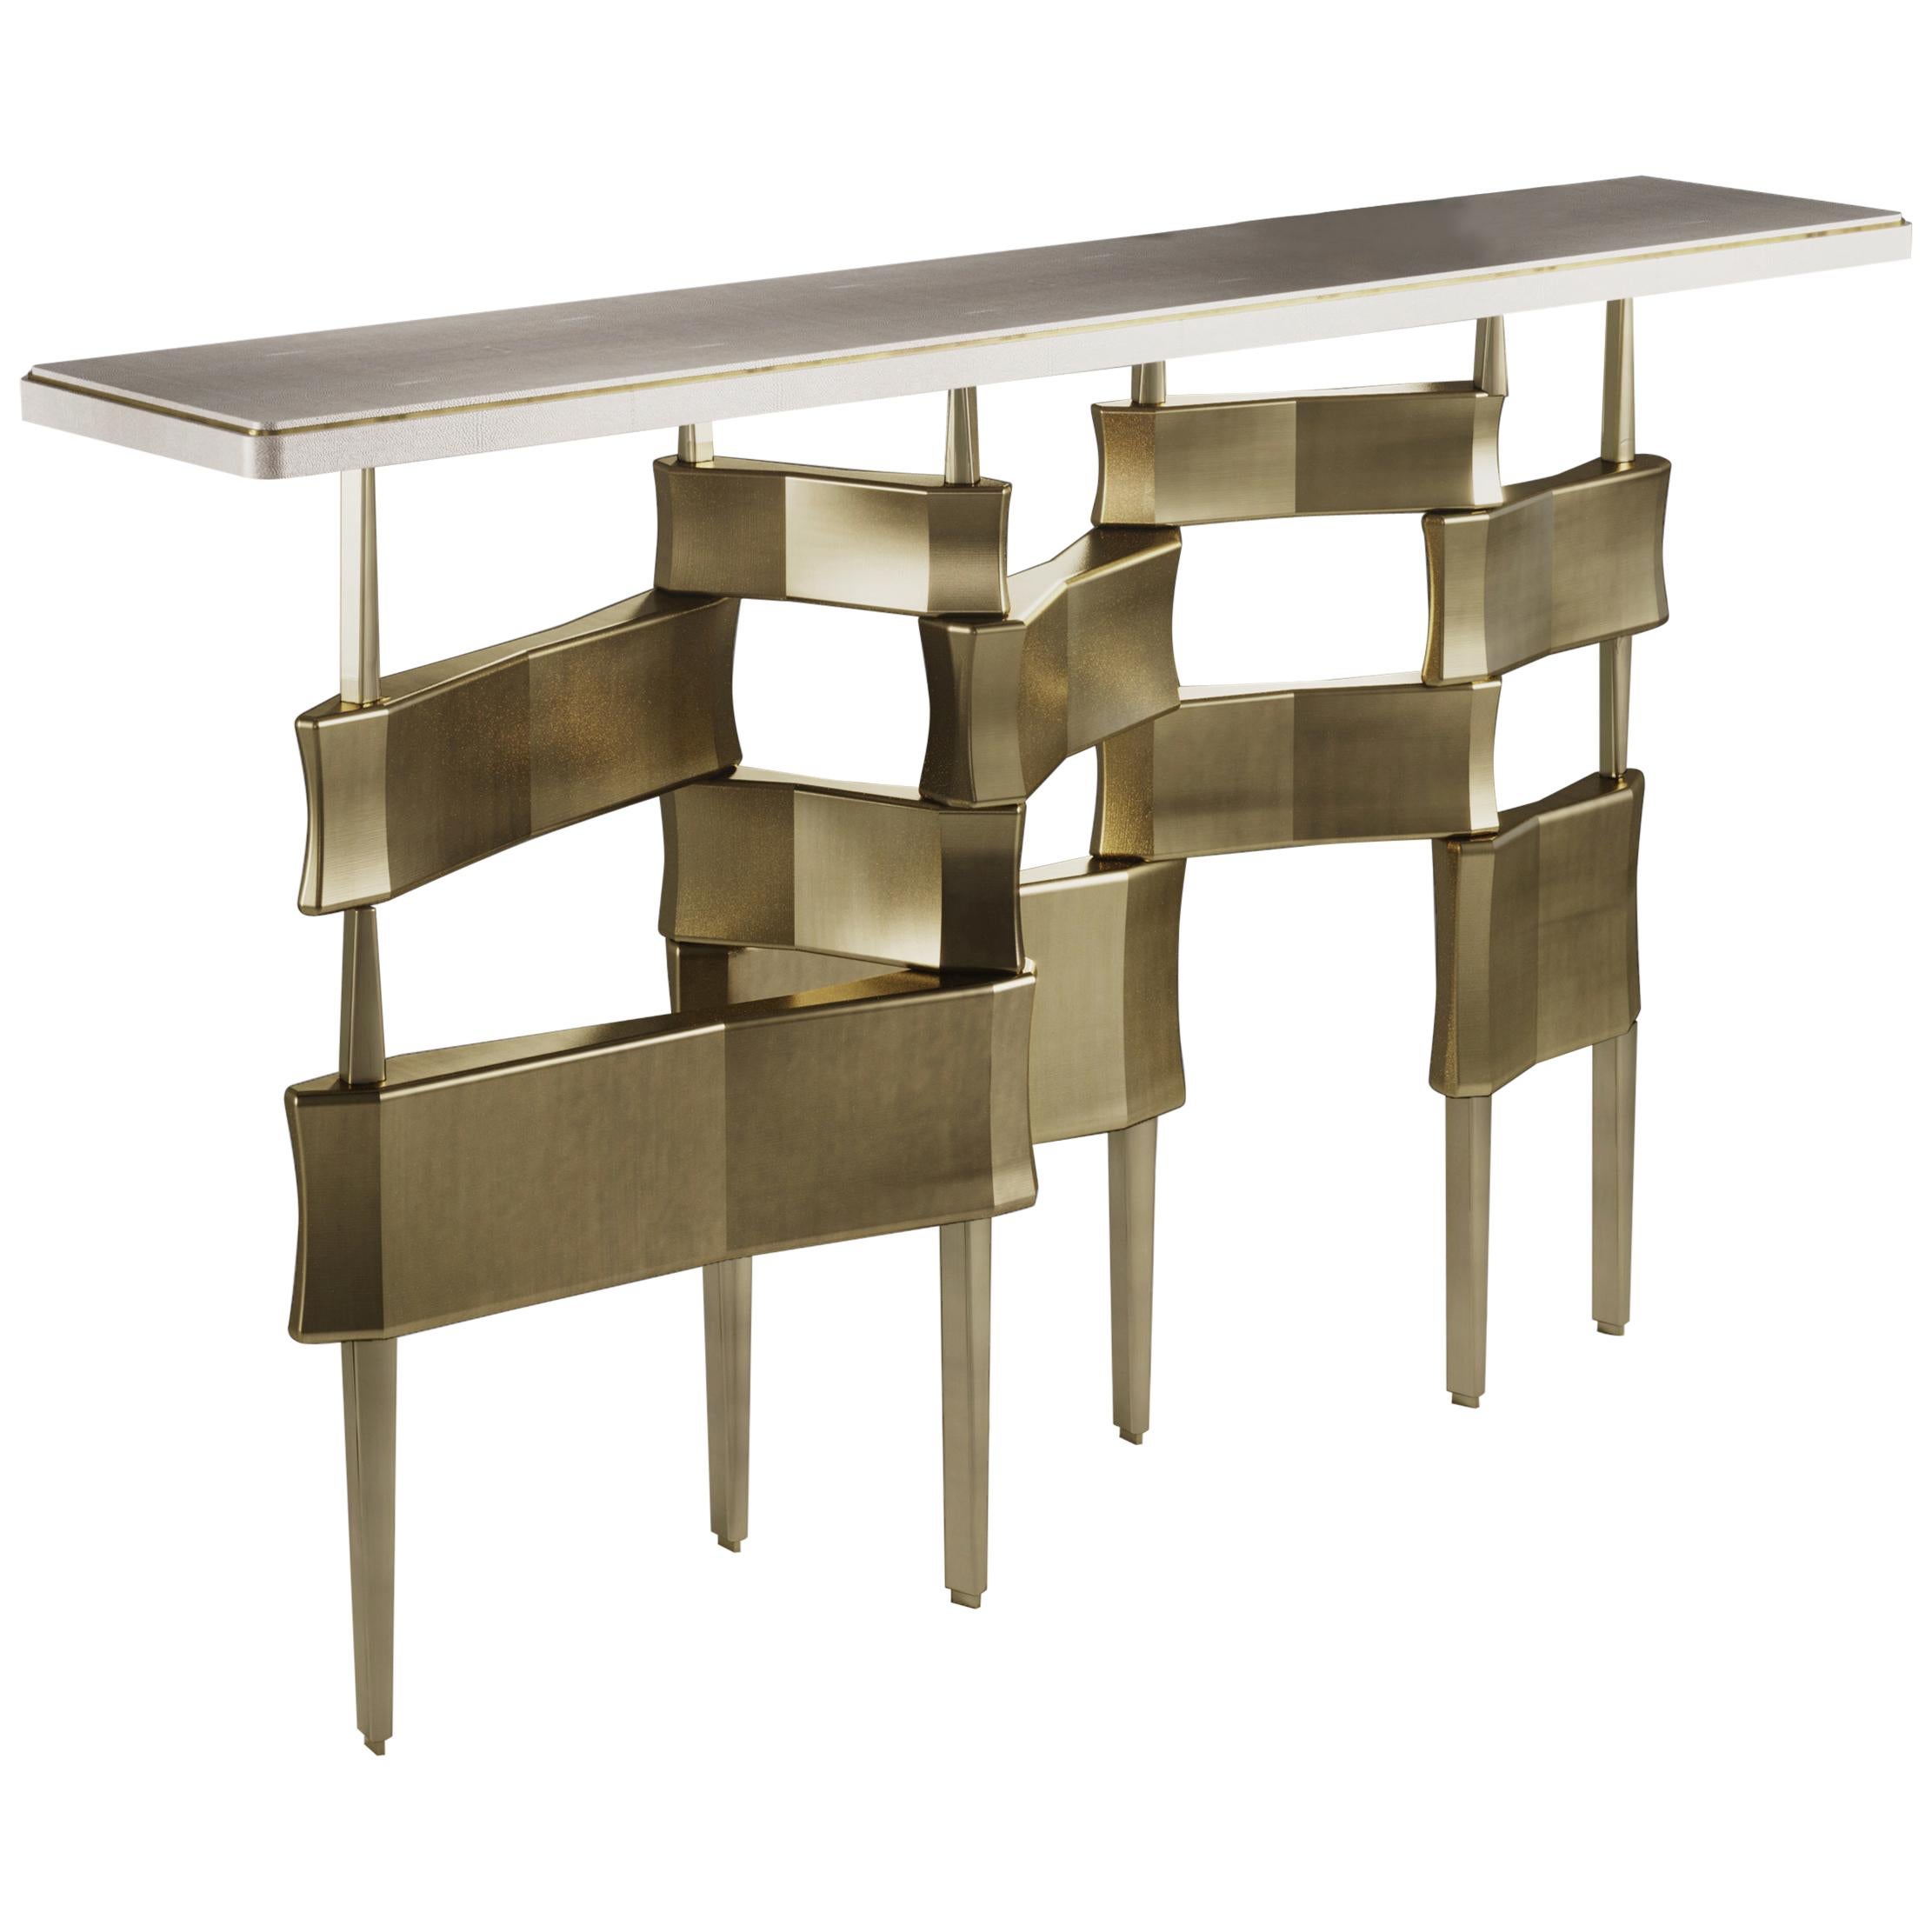 Table console Metropolis en galuchat crème et laiton bronze-patina de Kifu Paris